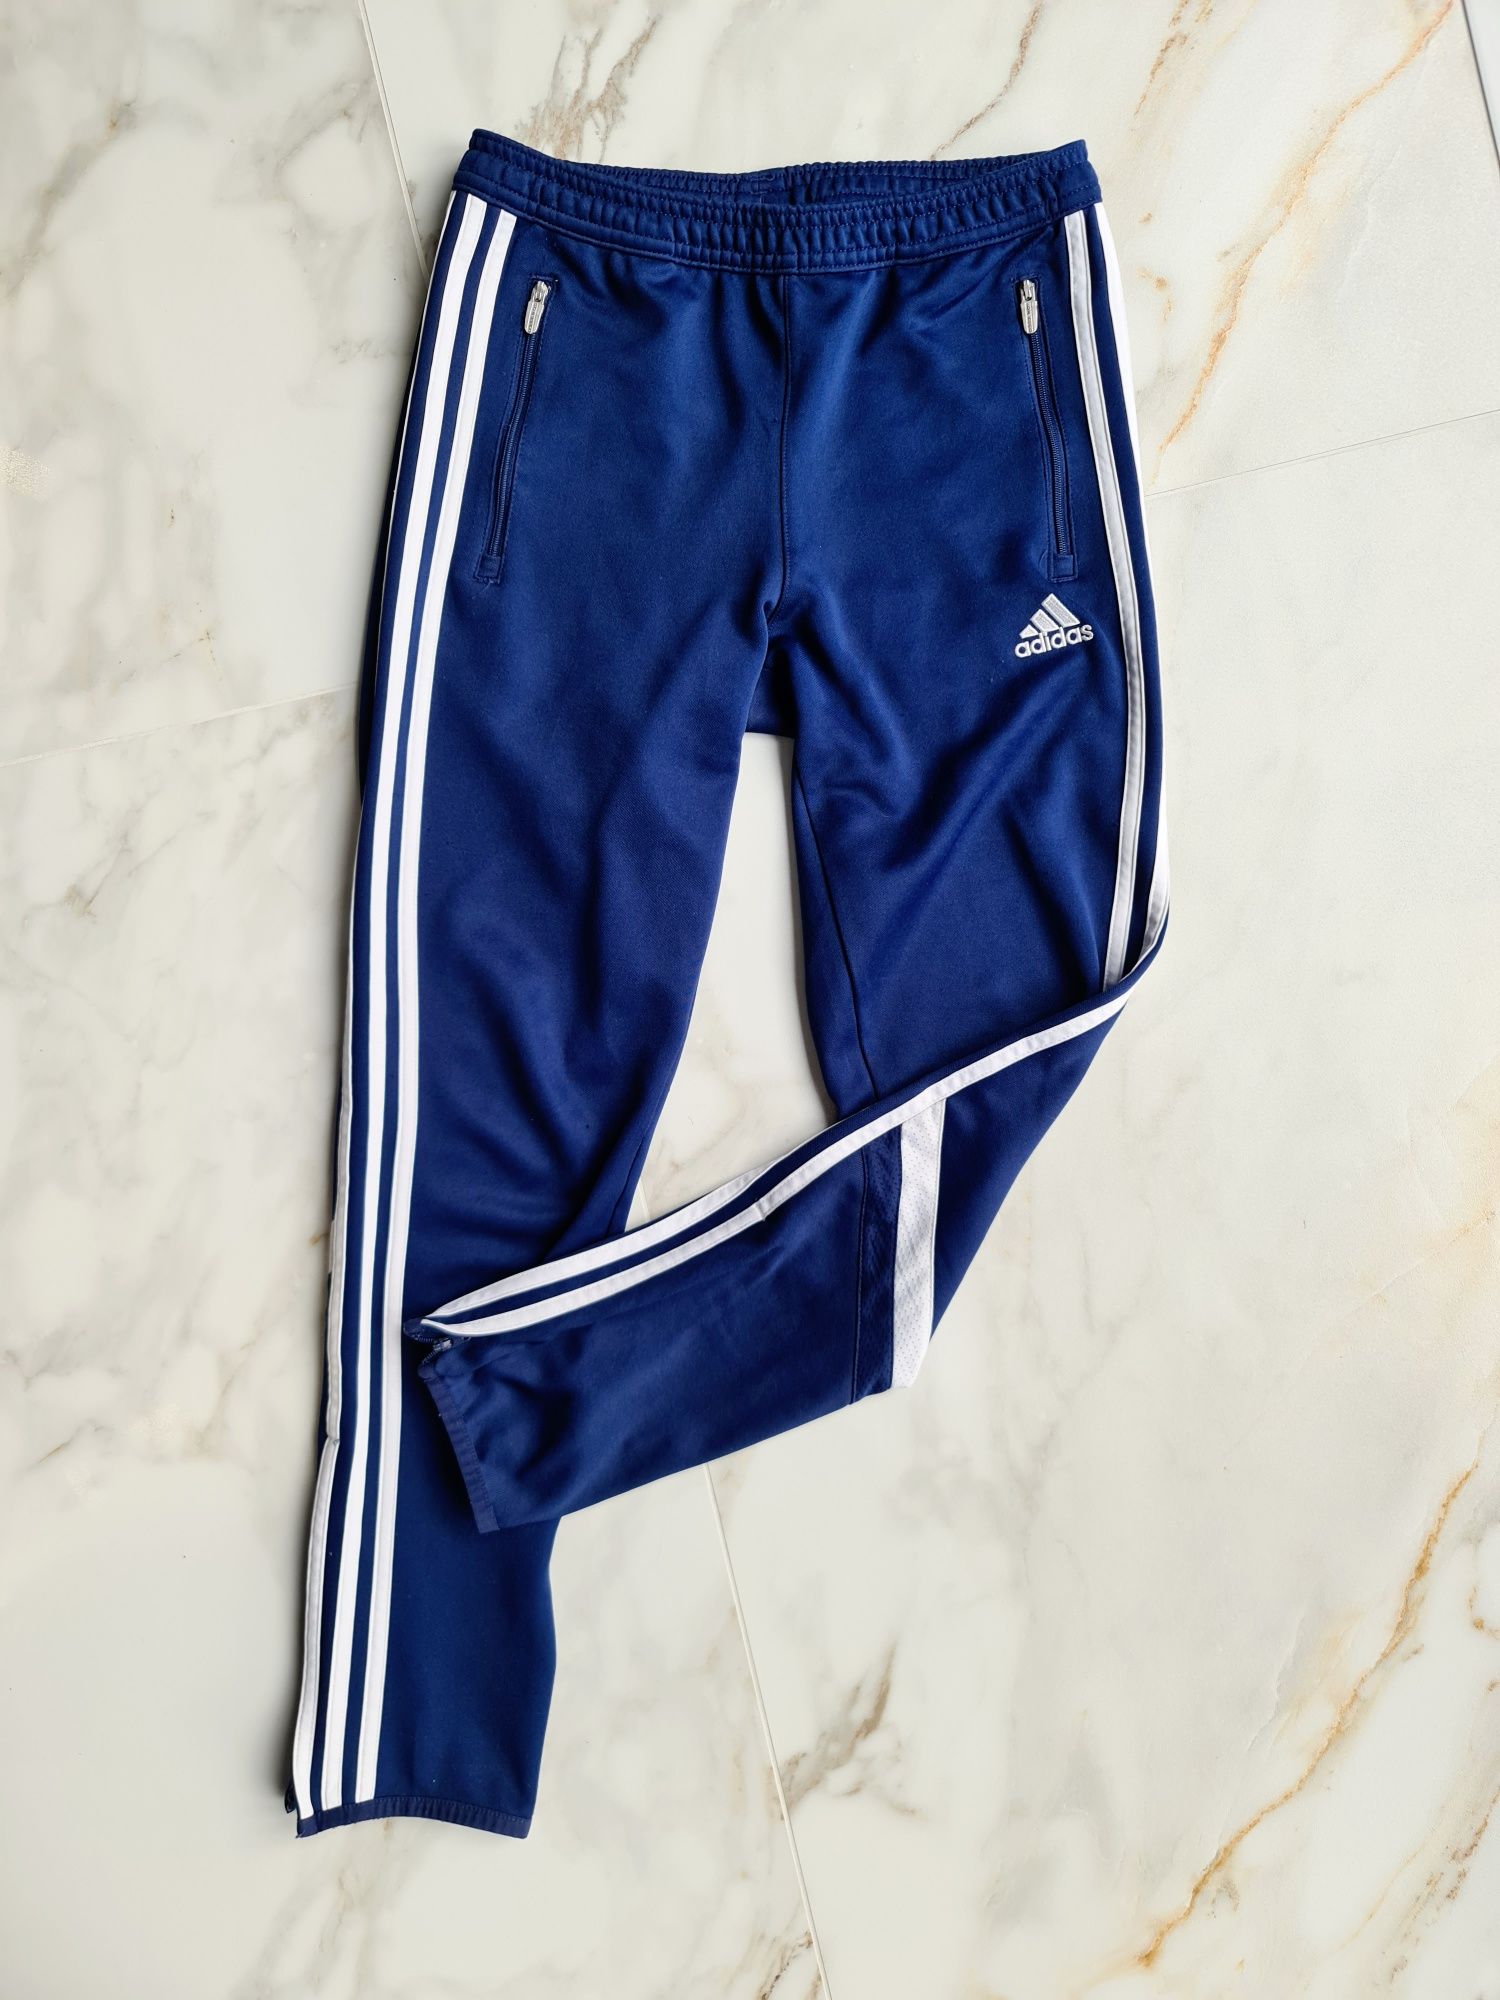 Adidas dresy spodnie granatowe dresowe sportowe fitness siłownia XS 34